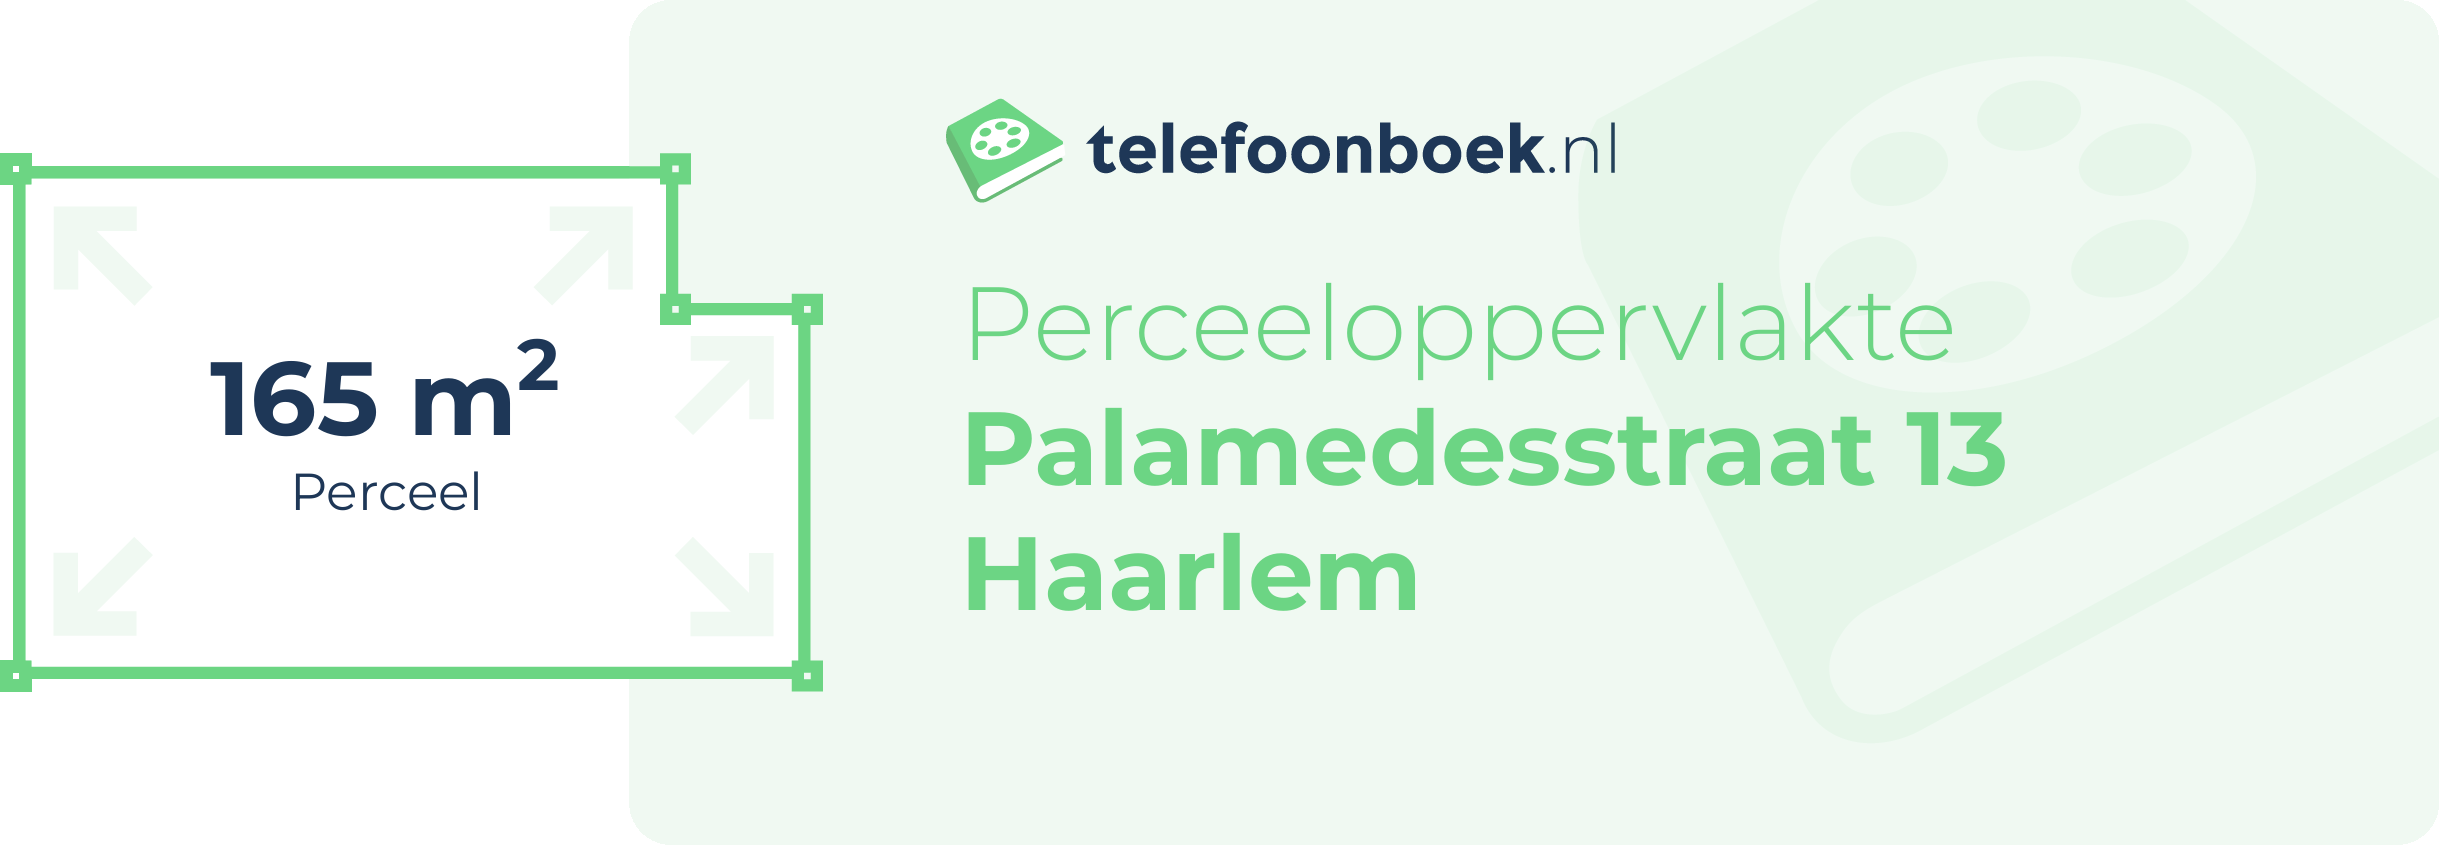 Perceeloppervlakte Palamedesstraat 13 Haarlem